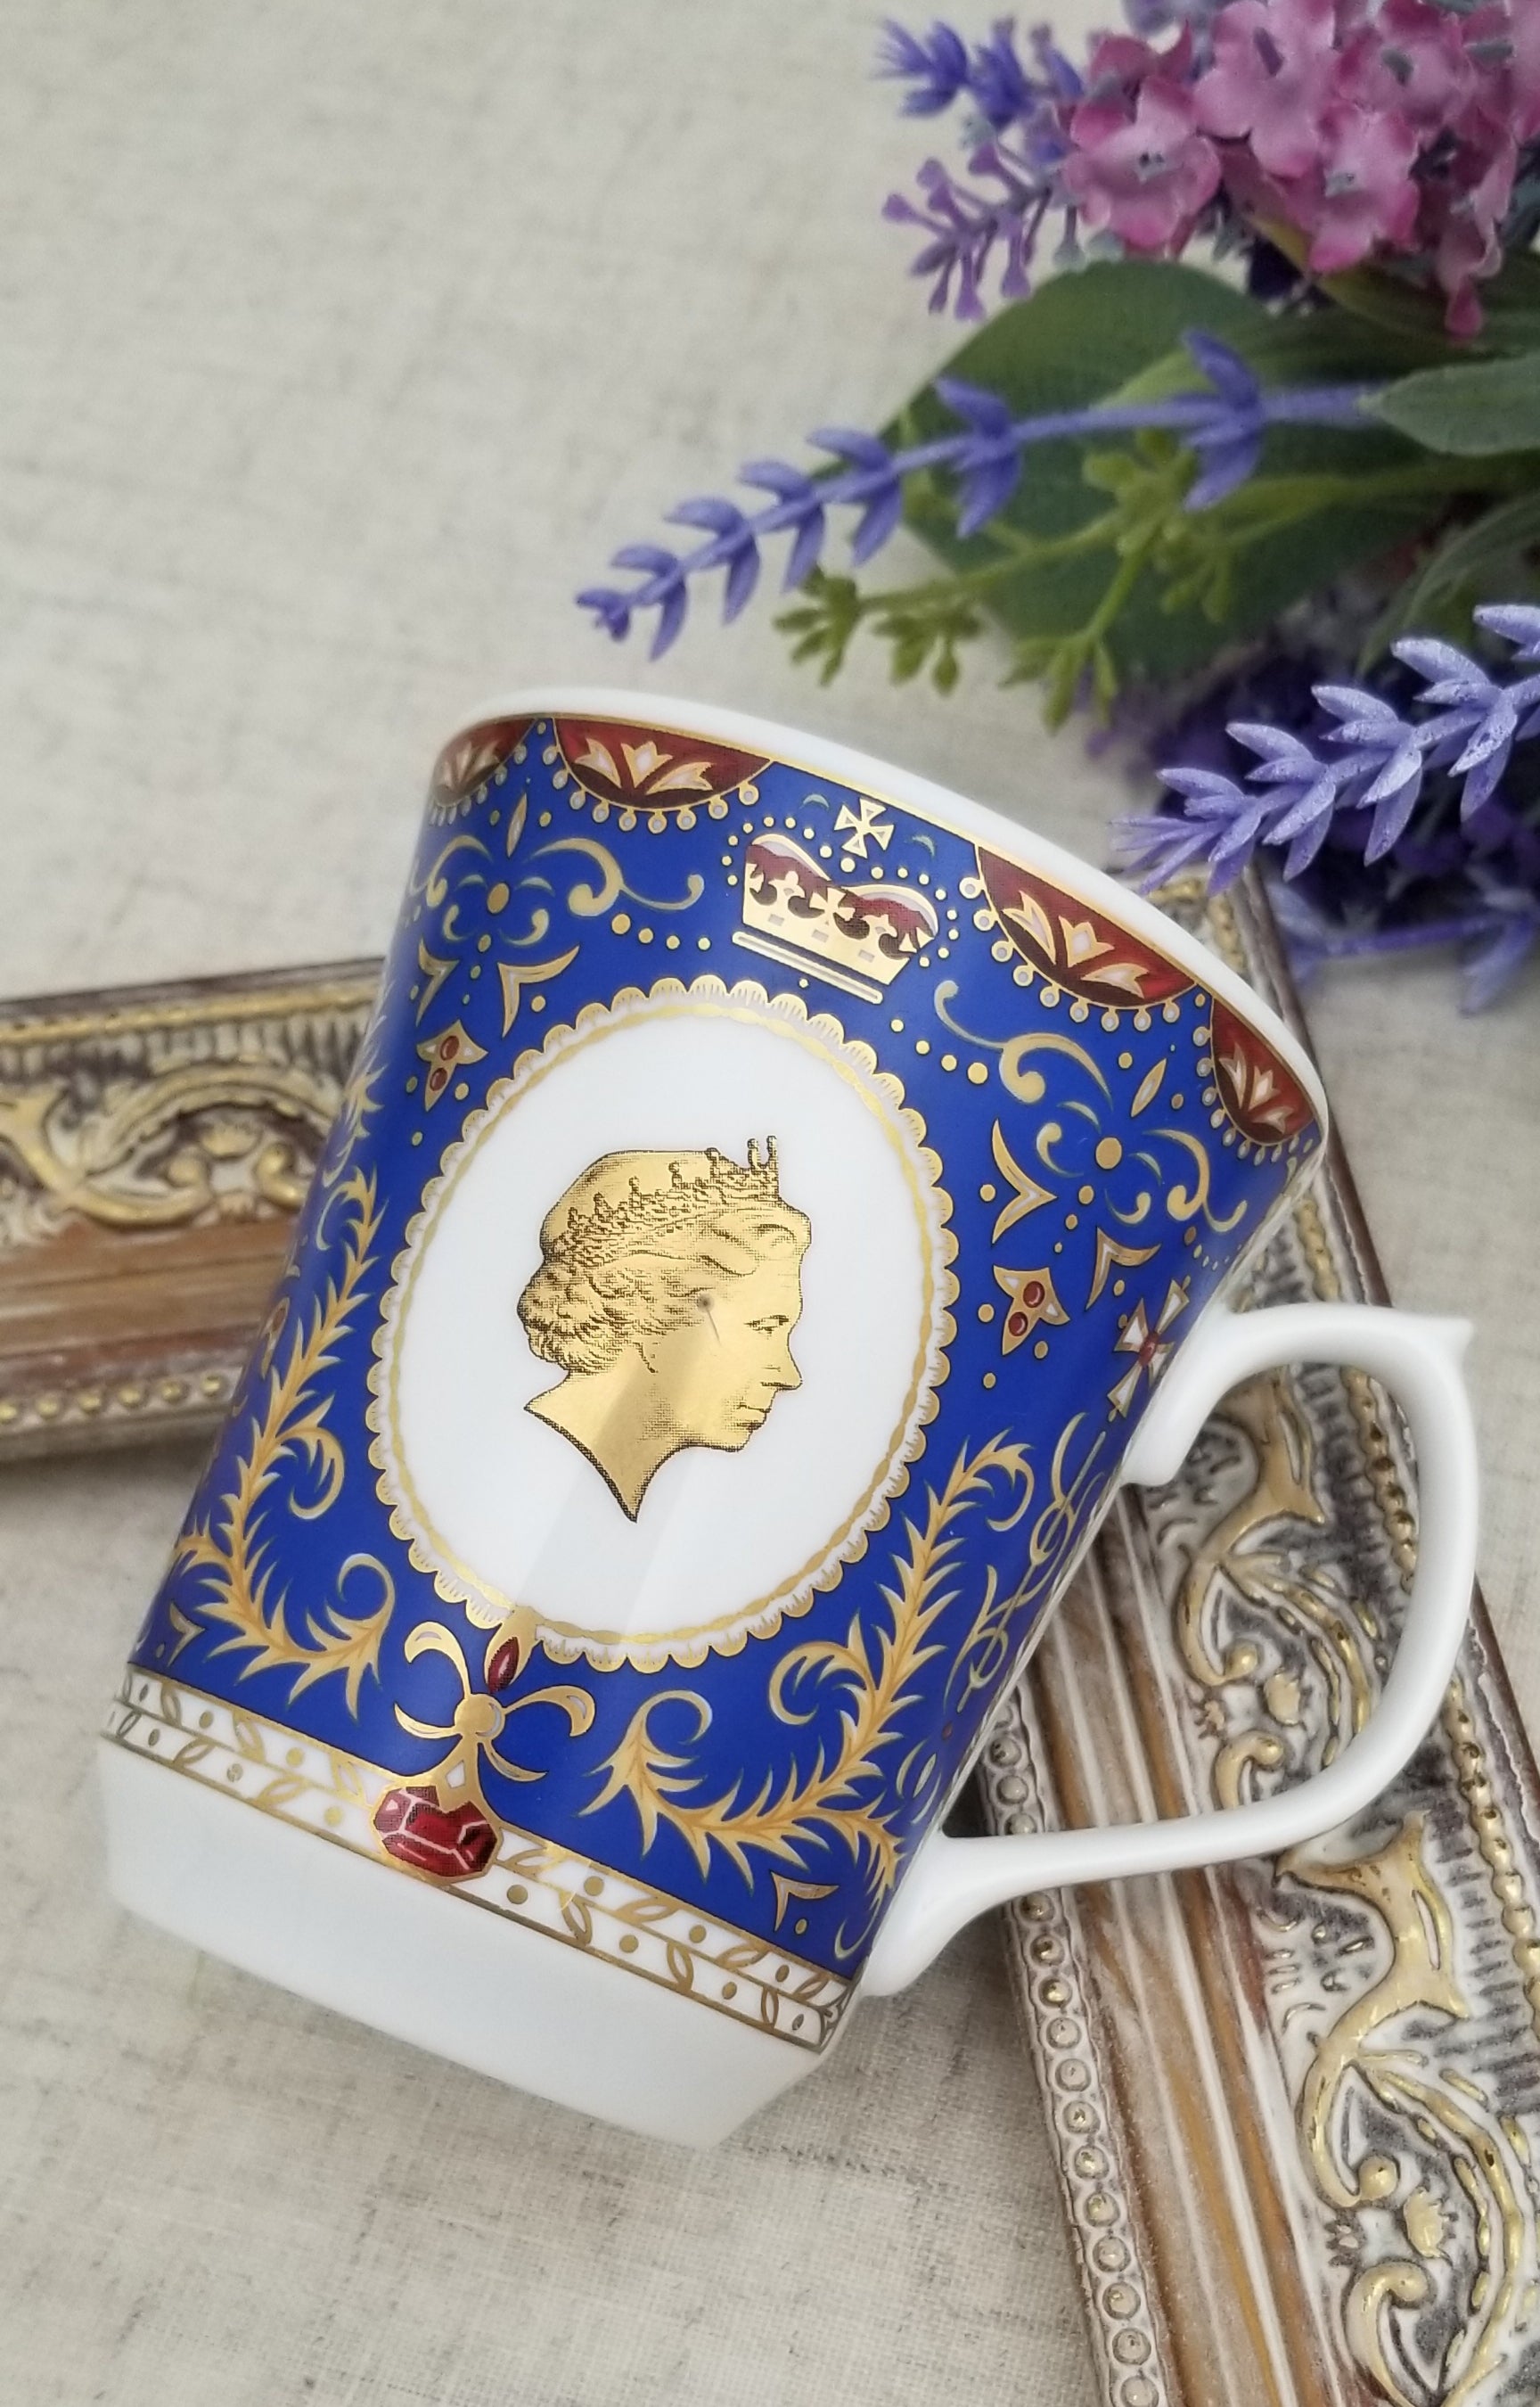 エリザベス女王 80歳のバースデー記念王室オフィシャルカップ 